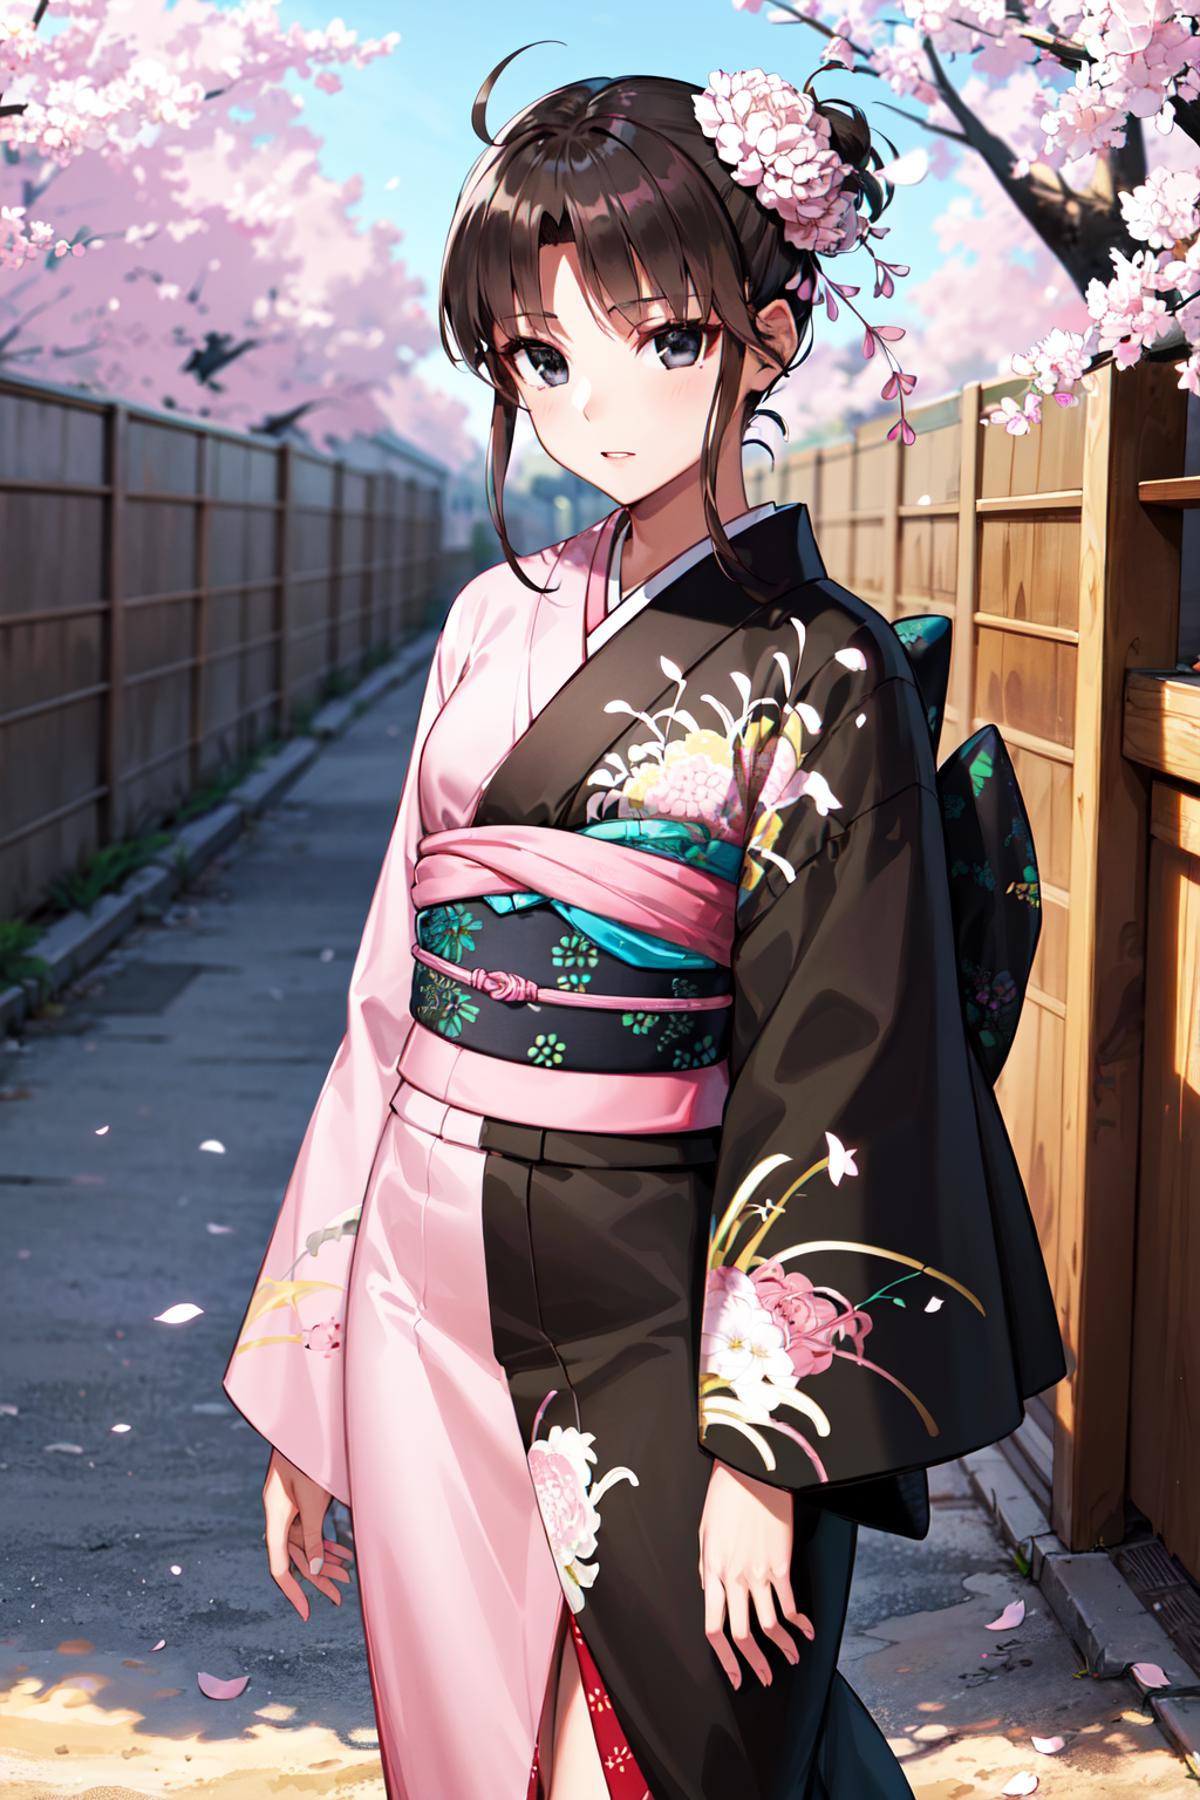 Ryougi Shiki 両儀式 / Kara No Kyoukai & Fate/Grand Order image by h_madoka